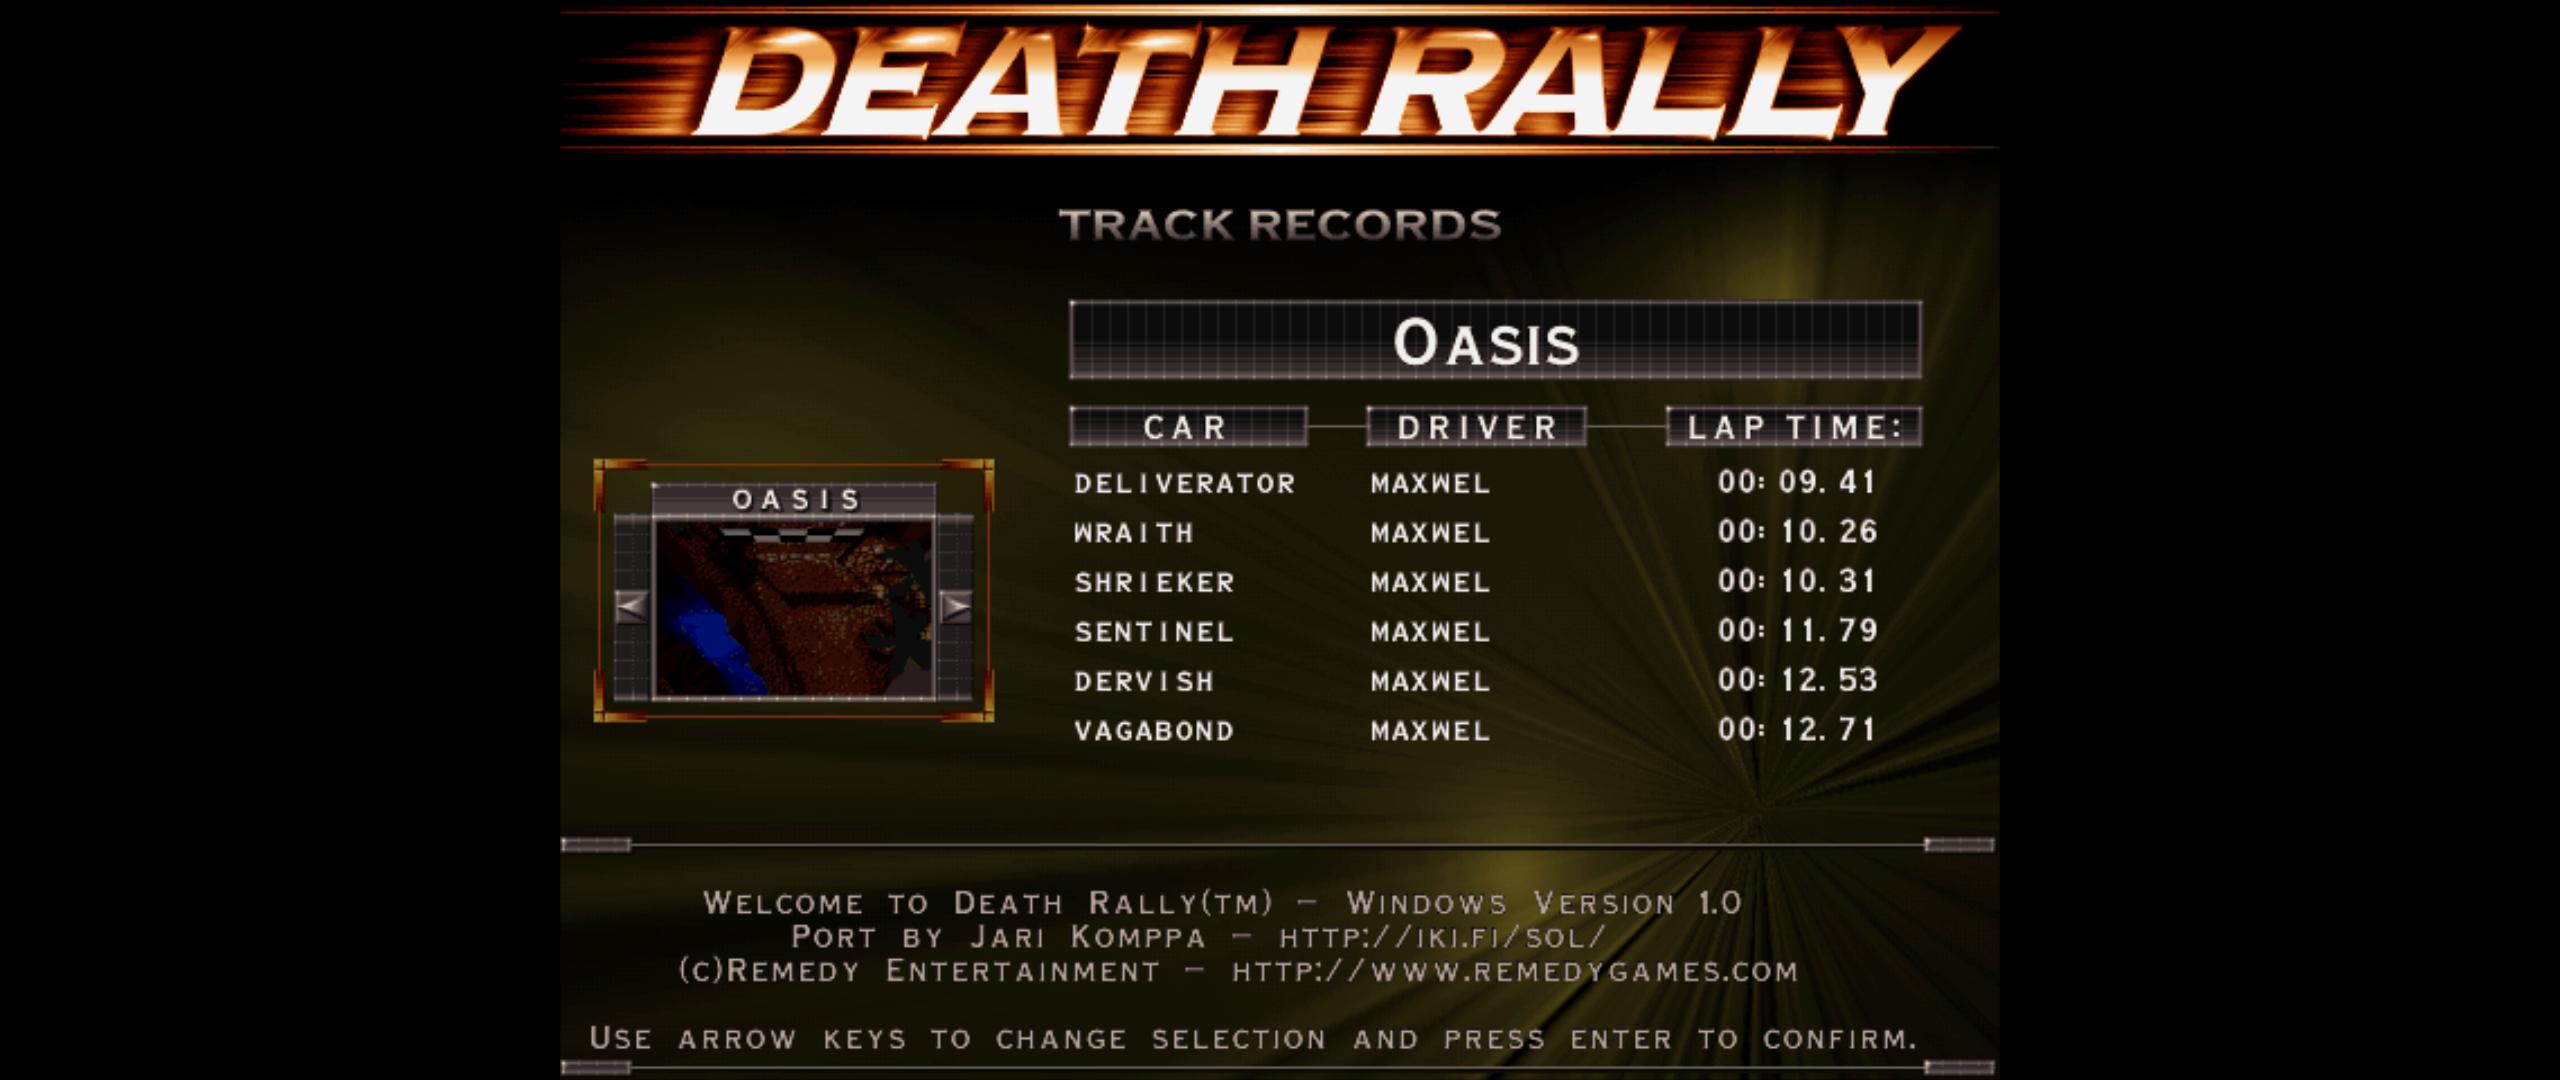 Maxwel: Death Rally [Oasis, Shrieker Car] (PC) 0:00:10.31 points on 2016-03-02 05:41:36